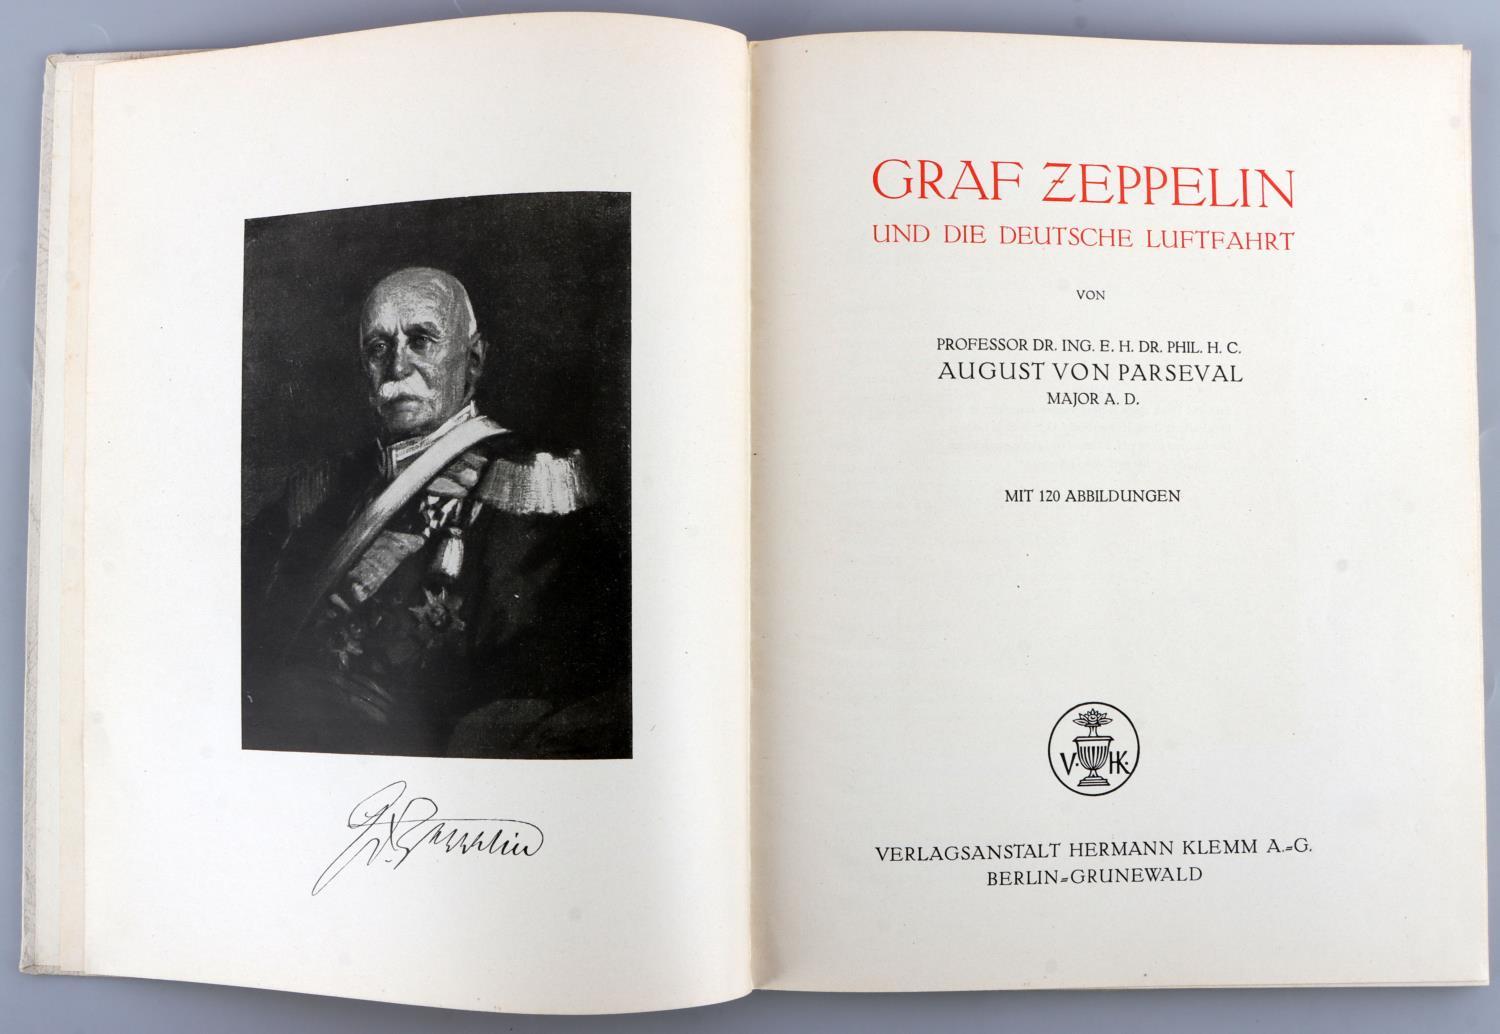 WWII GERMAN REICH HITLER EX LIBRIS ZEPPELIN BOOK